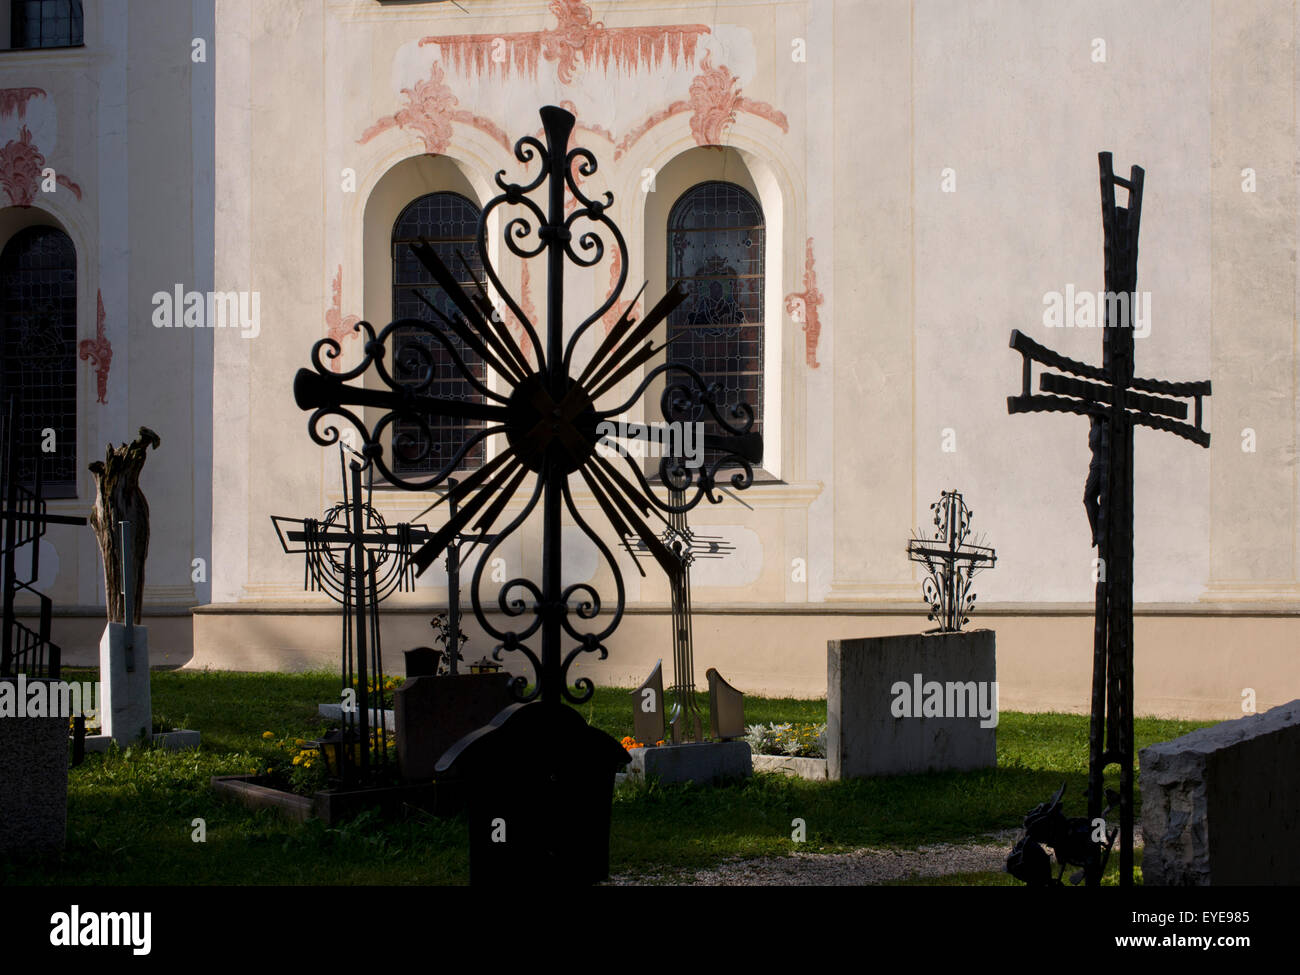 Typische Dolomiten kirchlichen Architektur und Friedhof Schmiedearbeiten Leonhard-St. Leonhard, einem Dolomiten-Dorf in Süd-Tirol, Italien. Stockfoto